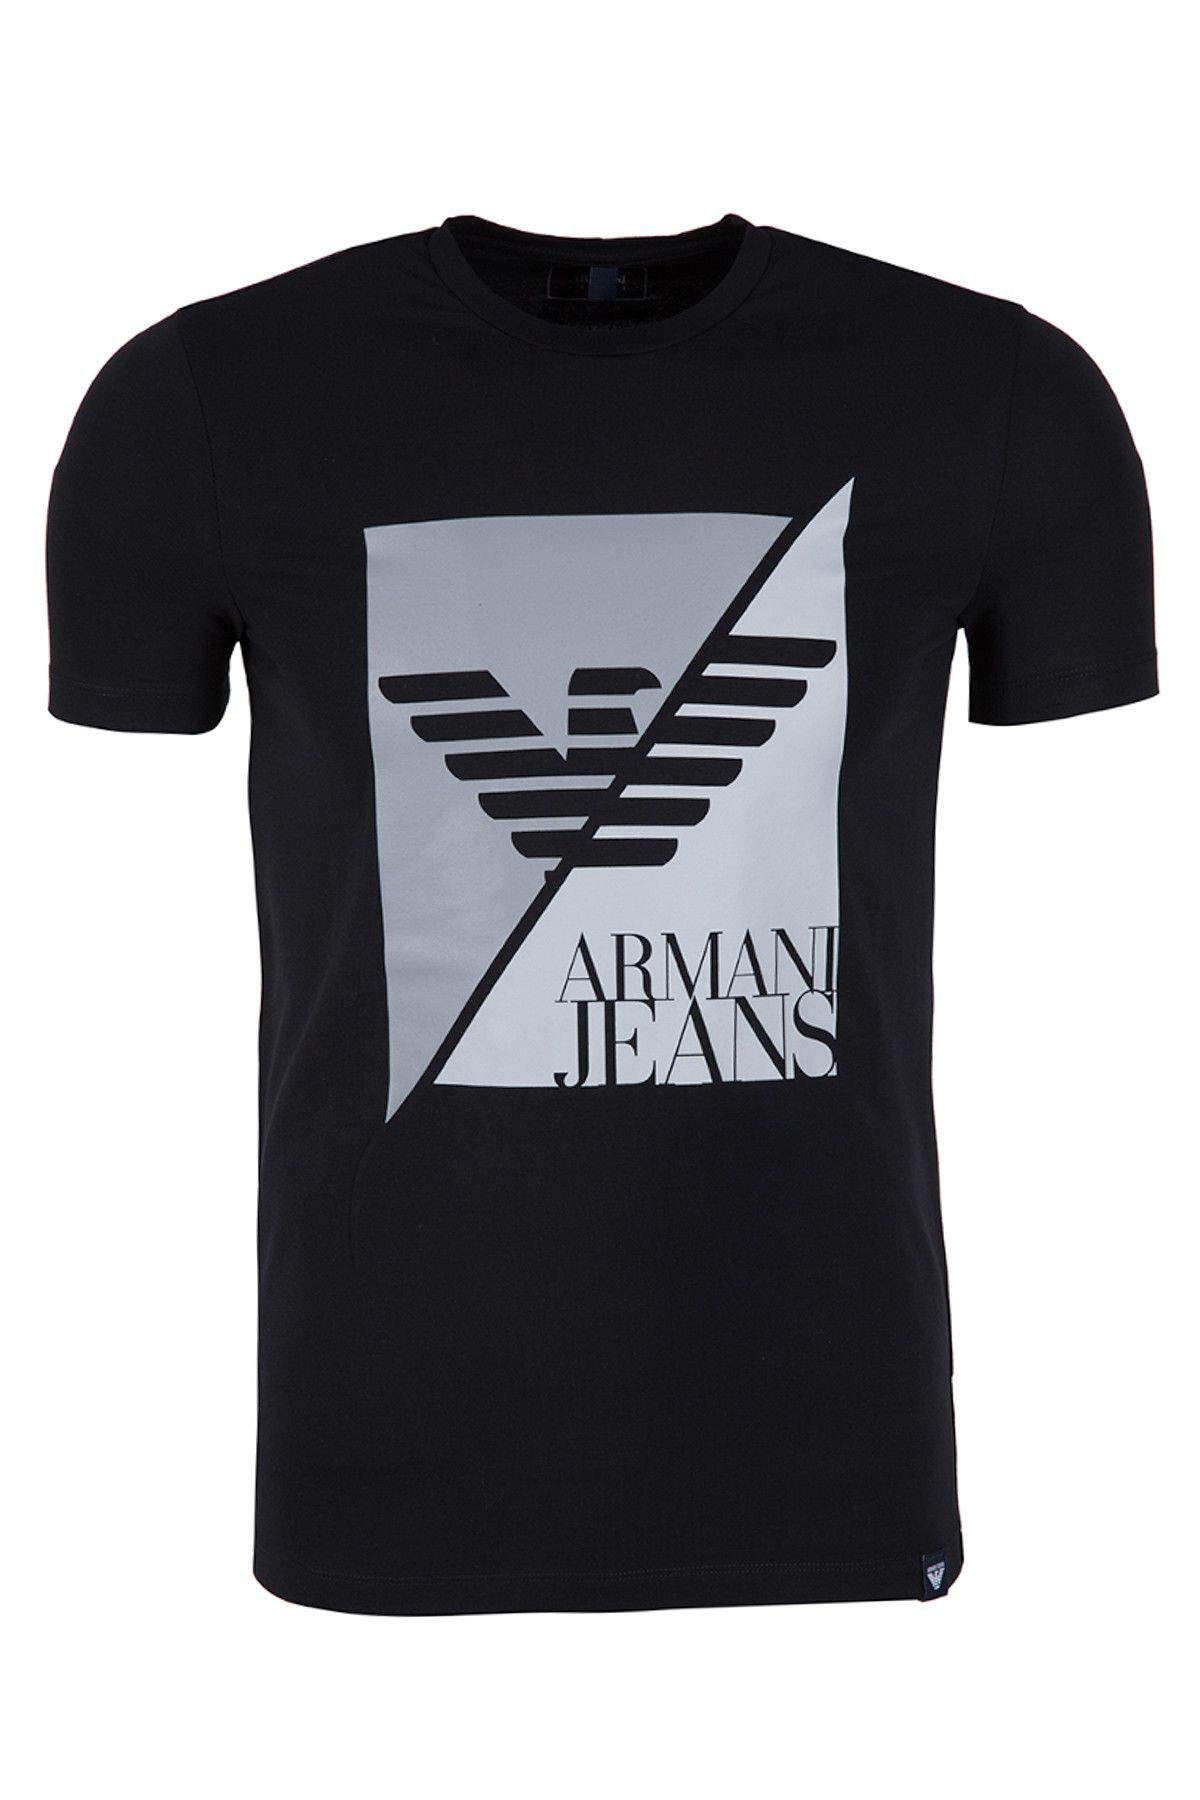 Armani Jeans Siyah Erkek T-Shirt 6Y6T11 6J0Az 1200